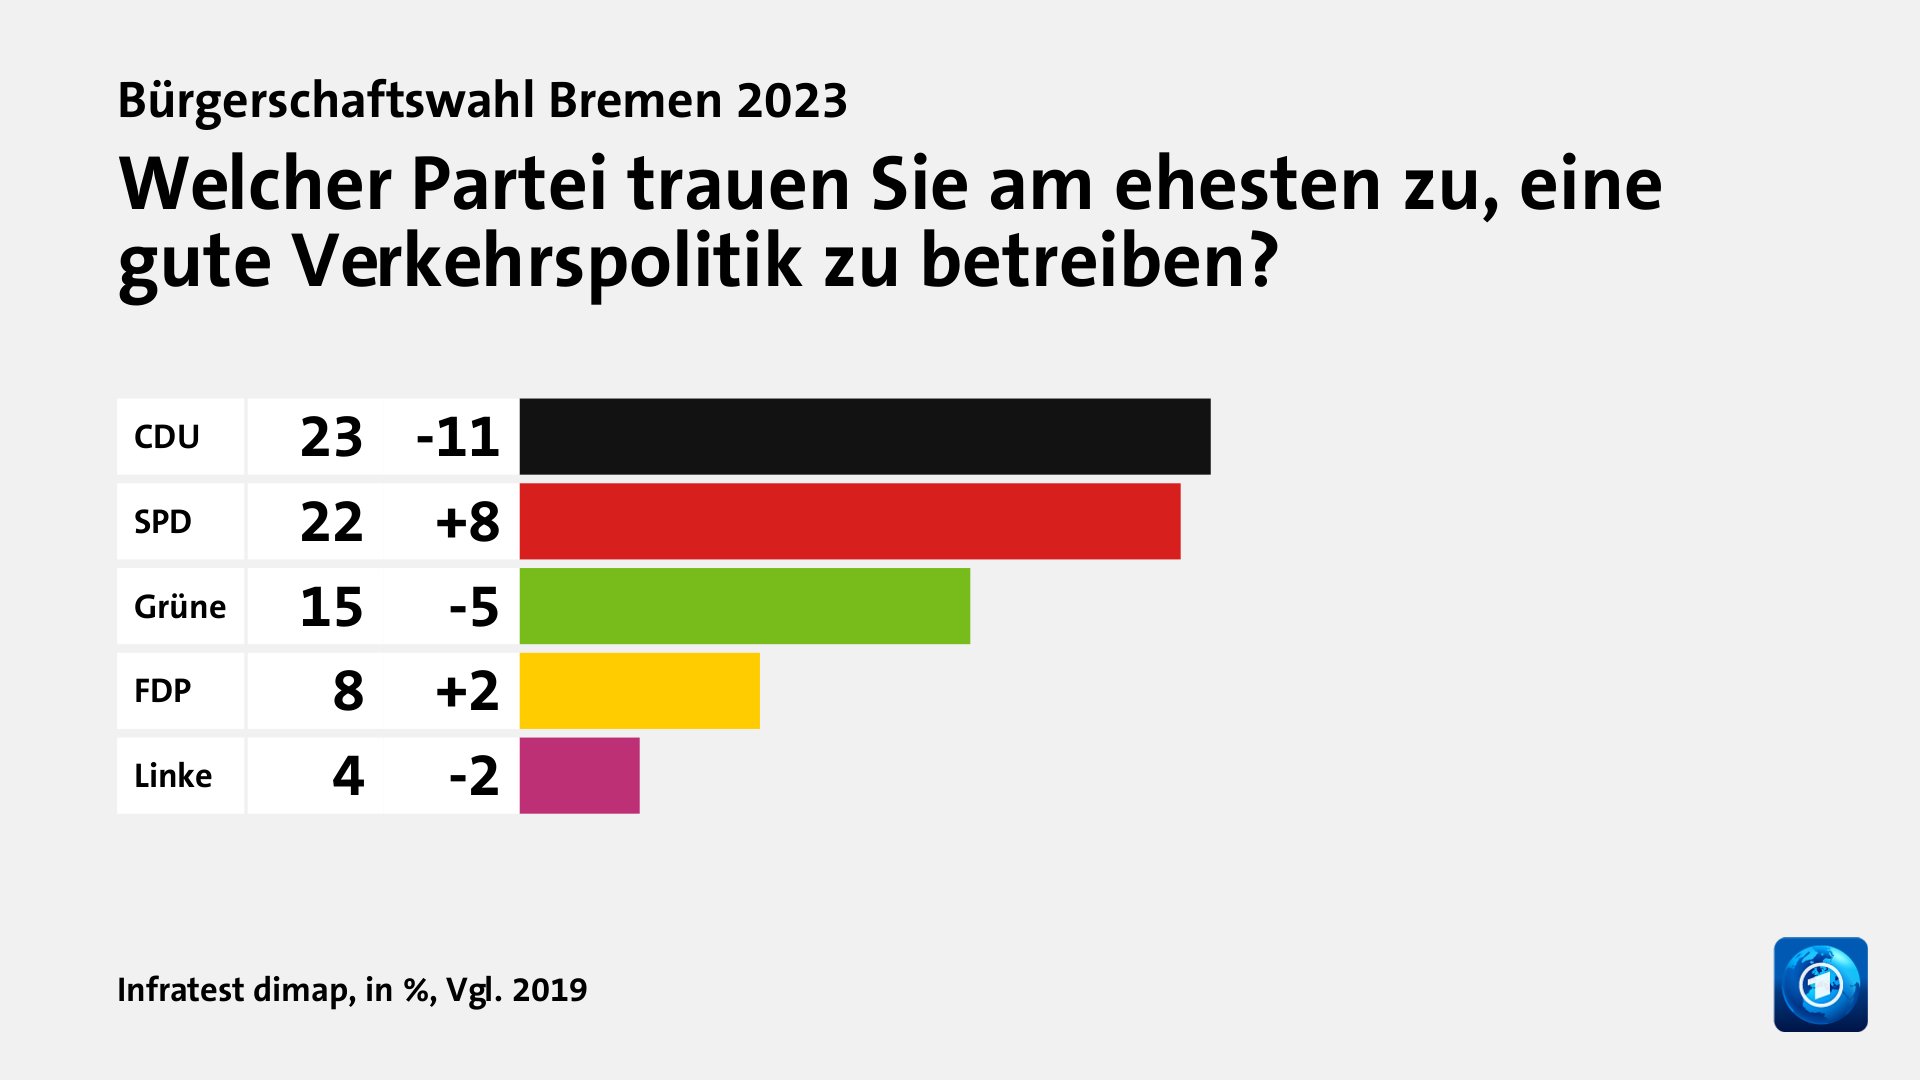 Welcher Partei trauen Sie am ehesten zu, eine gute Verkehrspolitik zu betreiben?, in %, Vgl. 2019: CDU 23, SPD 22, Grüne 15, FDP 8, Linke 4, Quelle: Infratest dimap